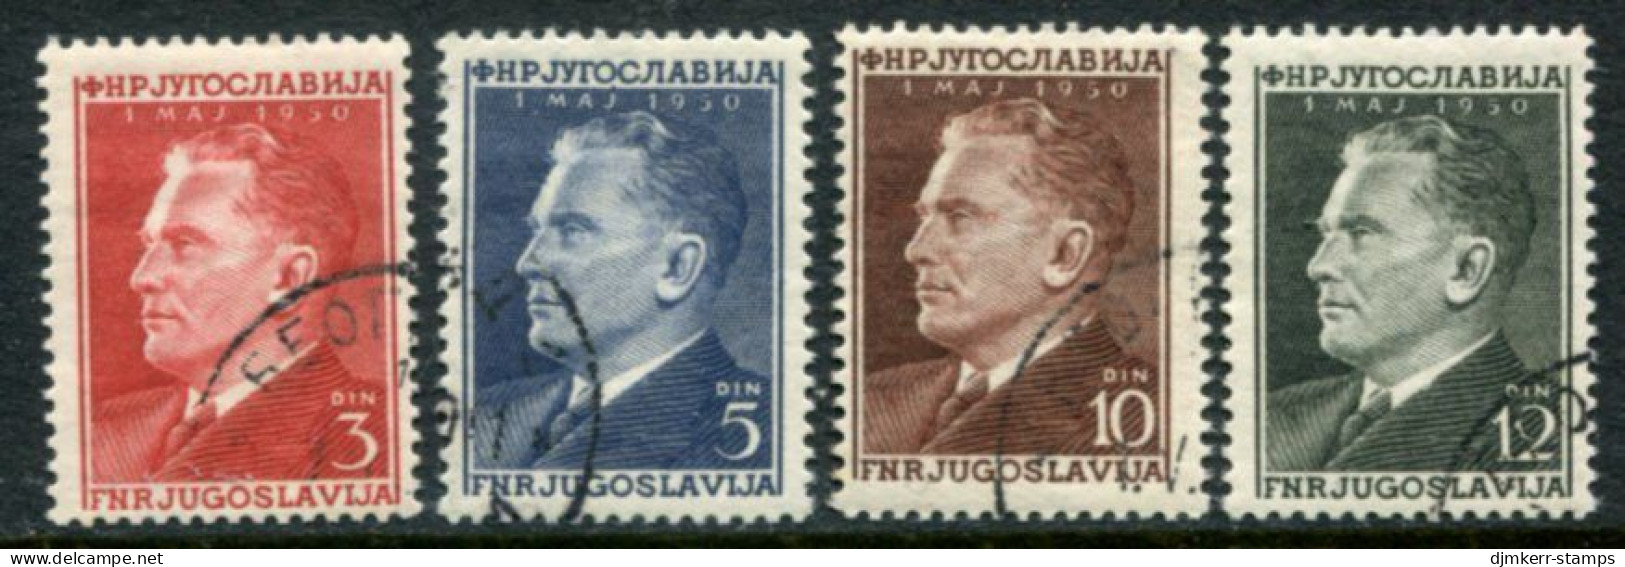 YUGOSLAVIA 1950 Labour Day - Tito Used.  Michel 605-08 - Gebraucht